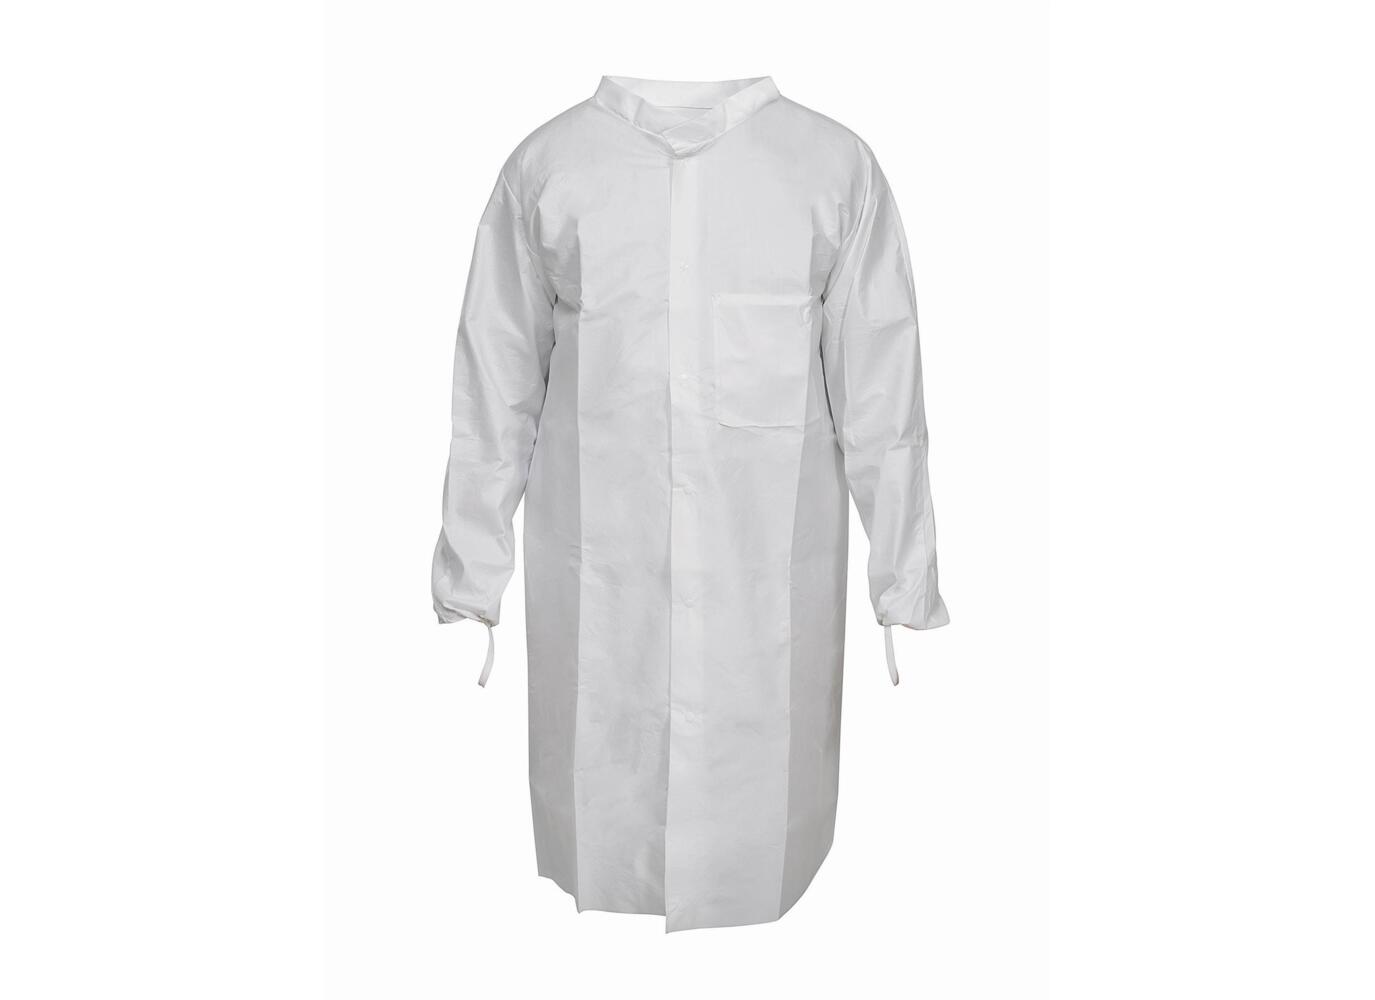 Kimtech™ A7 P+, Laboratory Coat 97700 - White, S, 1x15 (15 total) - 97700